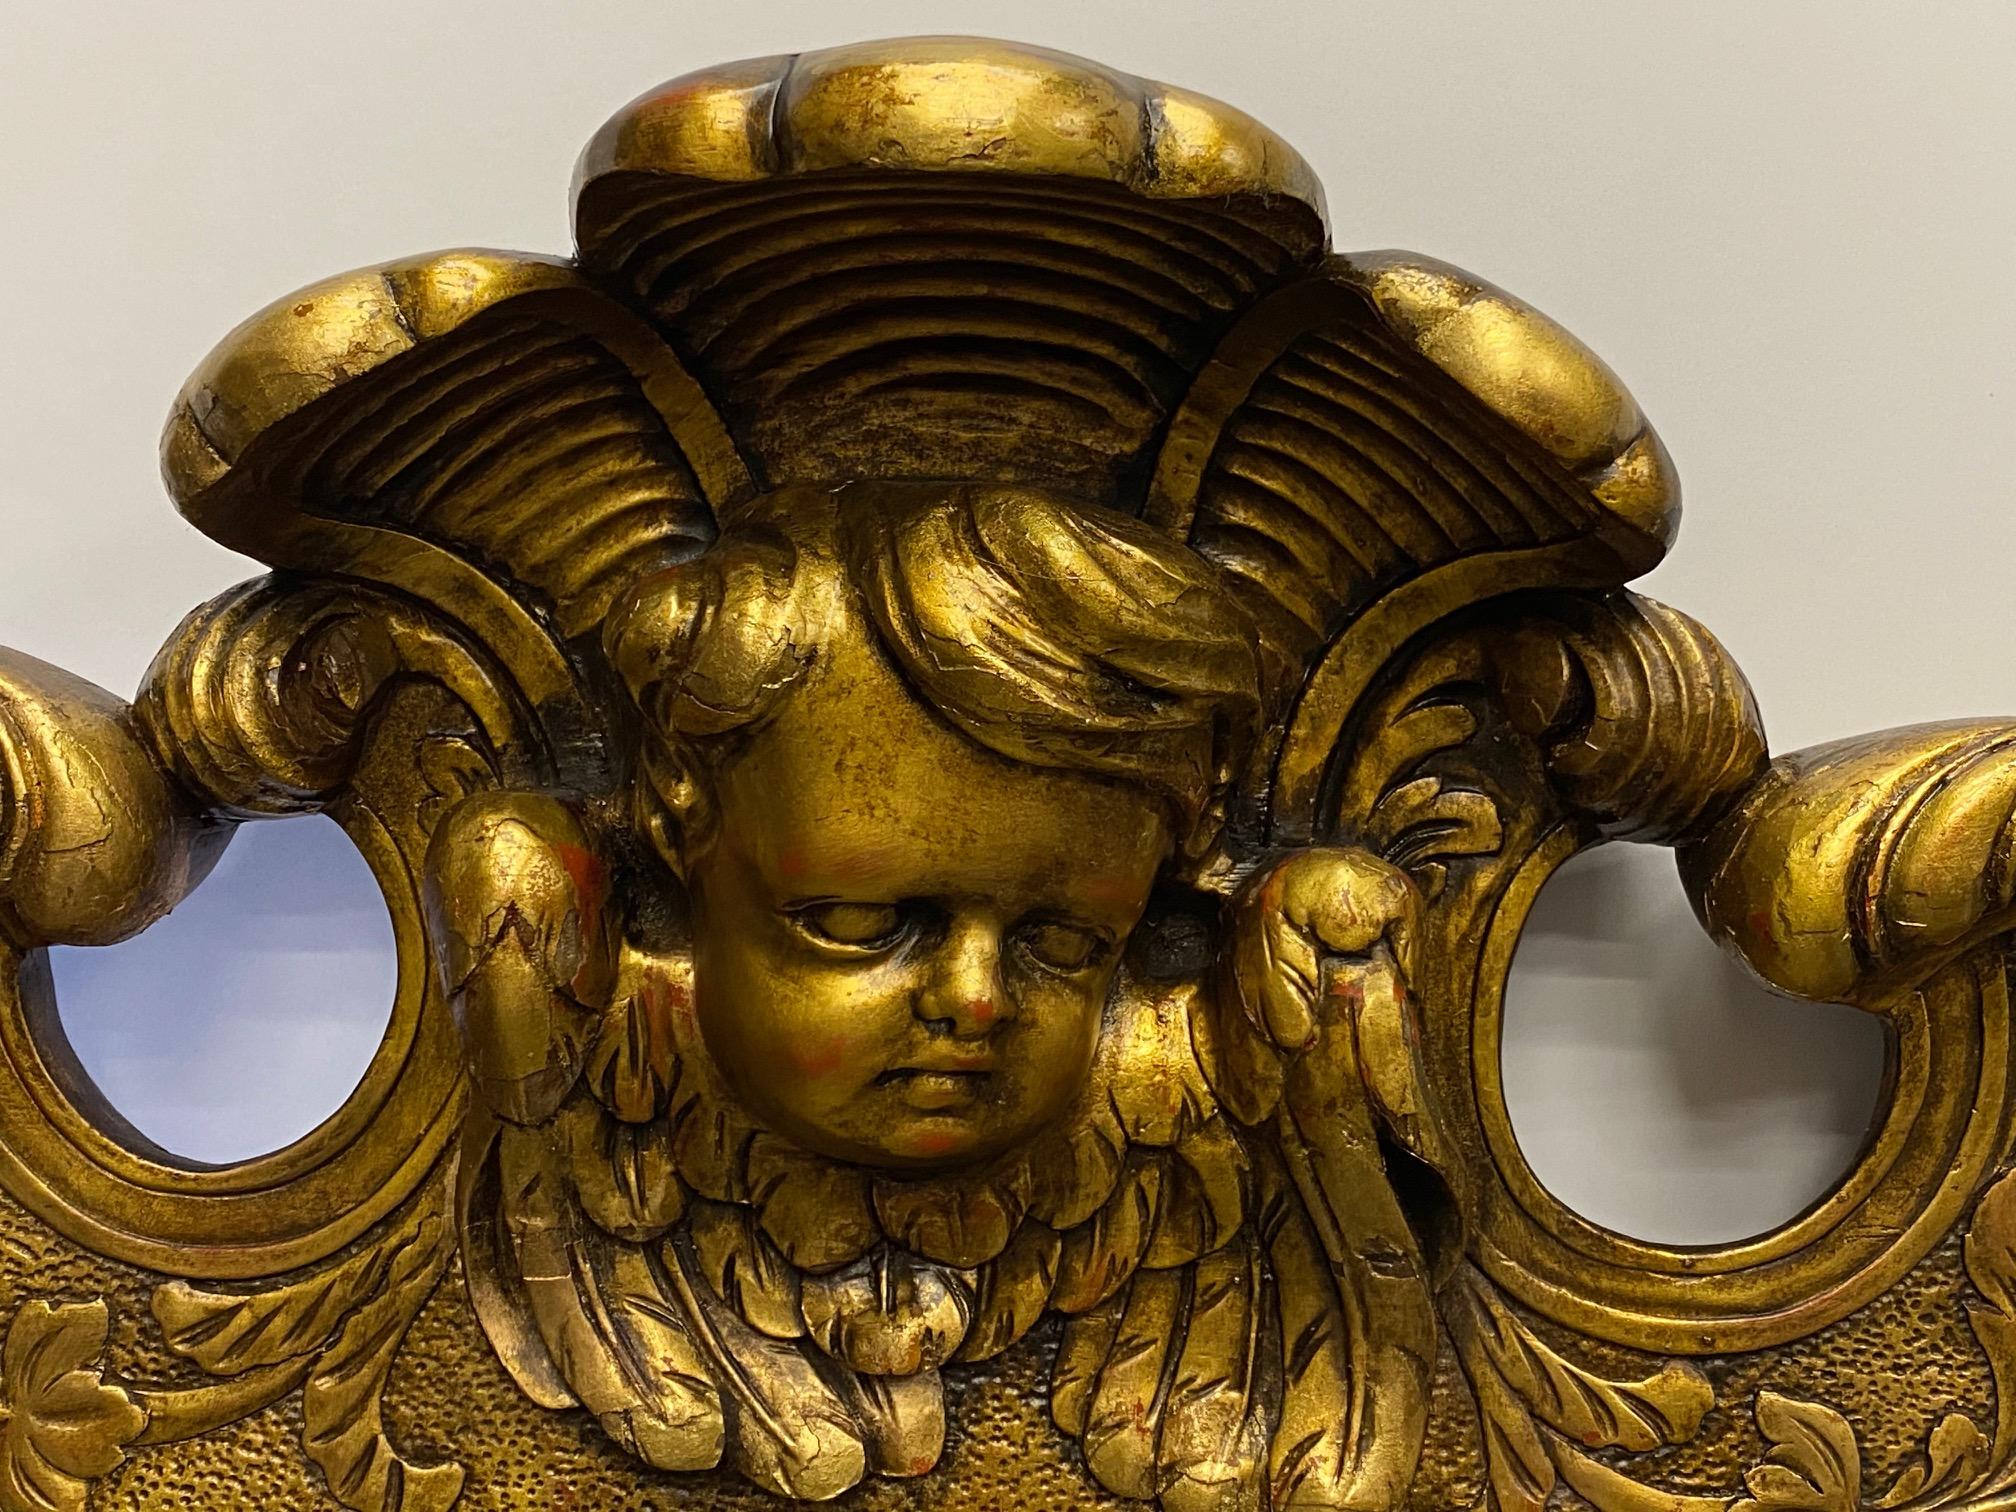 Magnifique miroir vintage en noyer sculpté avec une finition en or vénitien, de merveilleux détails à la sculpture et le visage d'un chérubin au sommet.
Profondeur du corps du miroir : 1/5